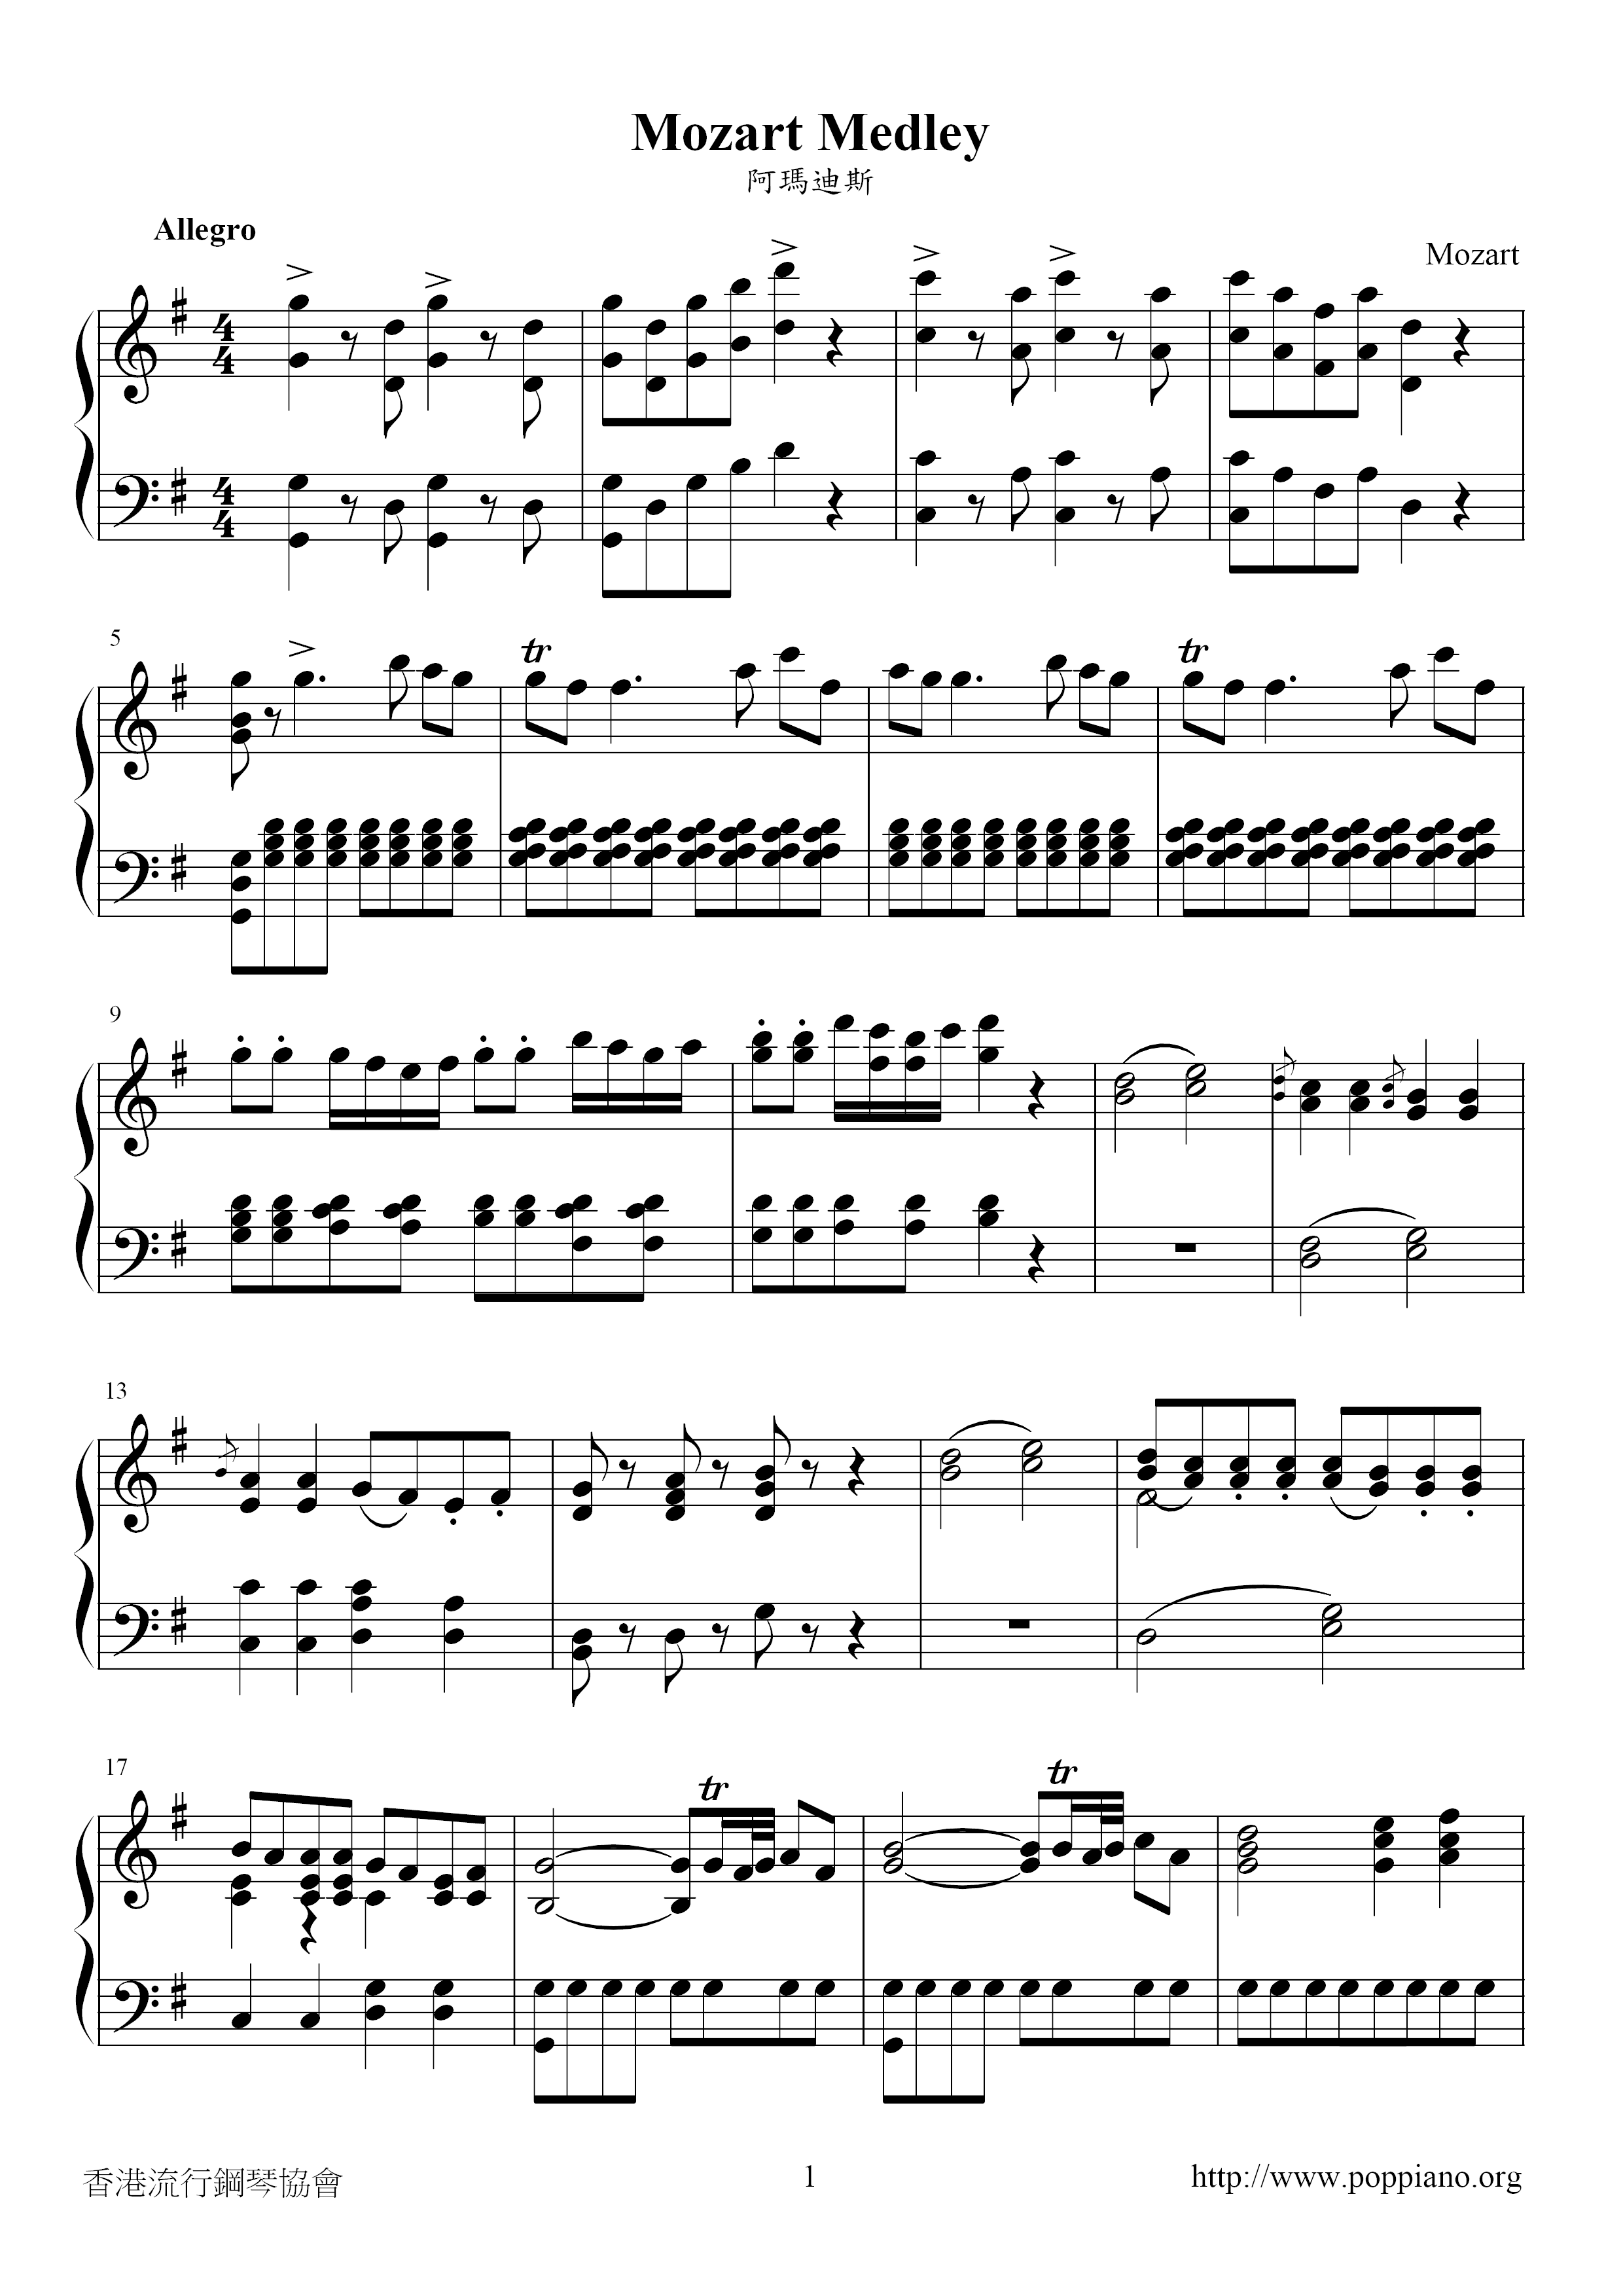 Amadeus Score